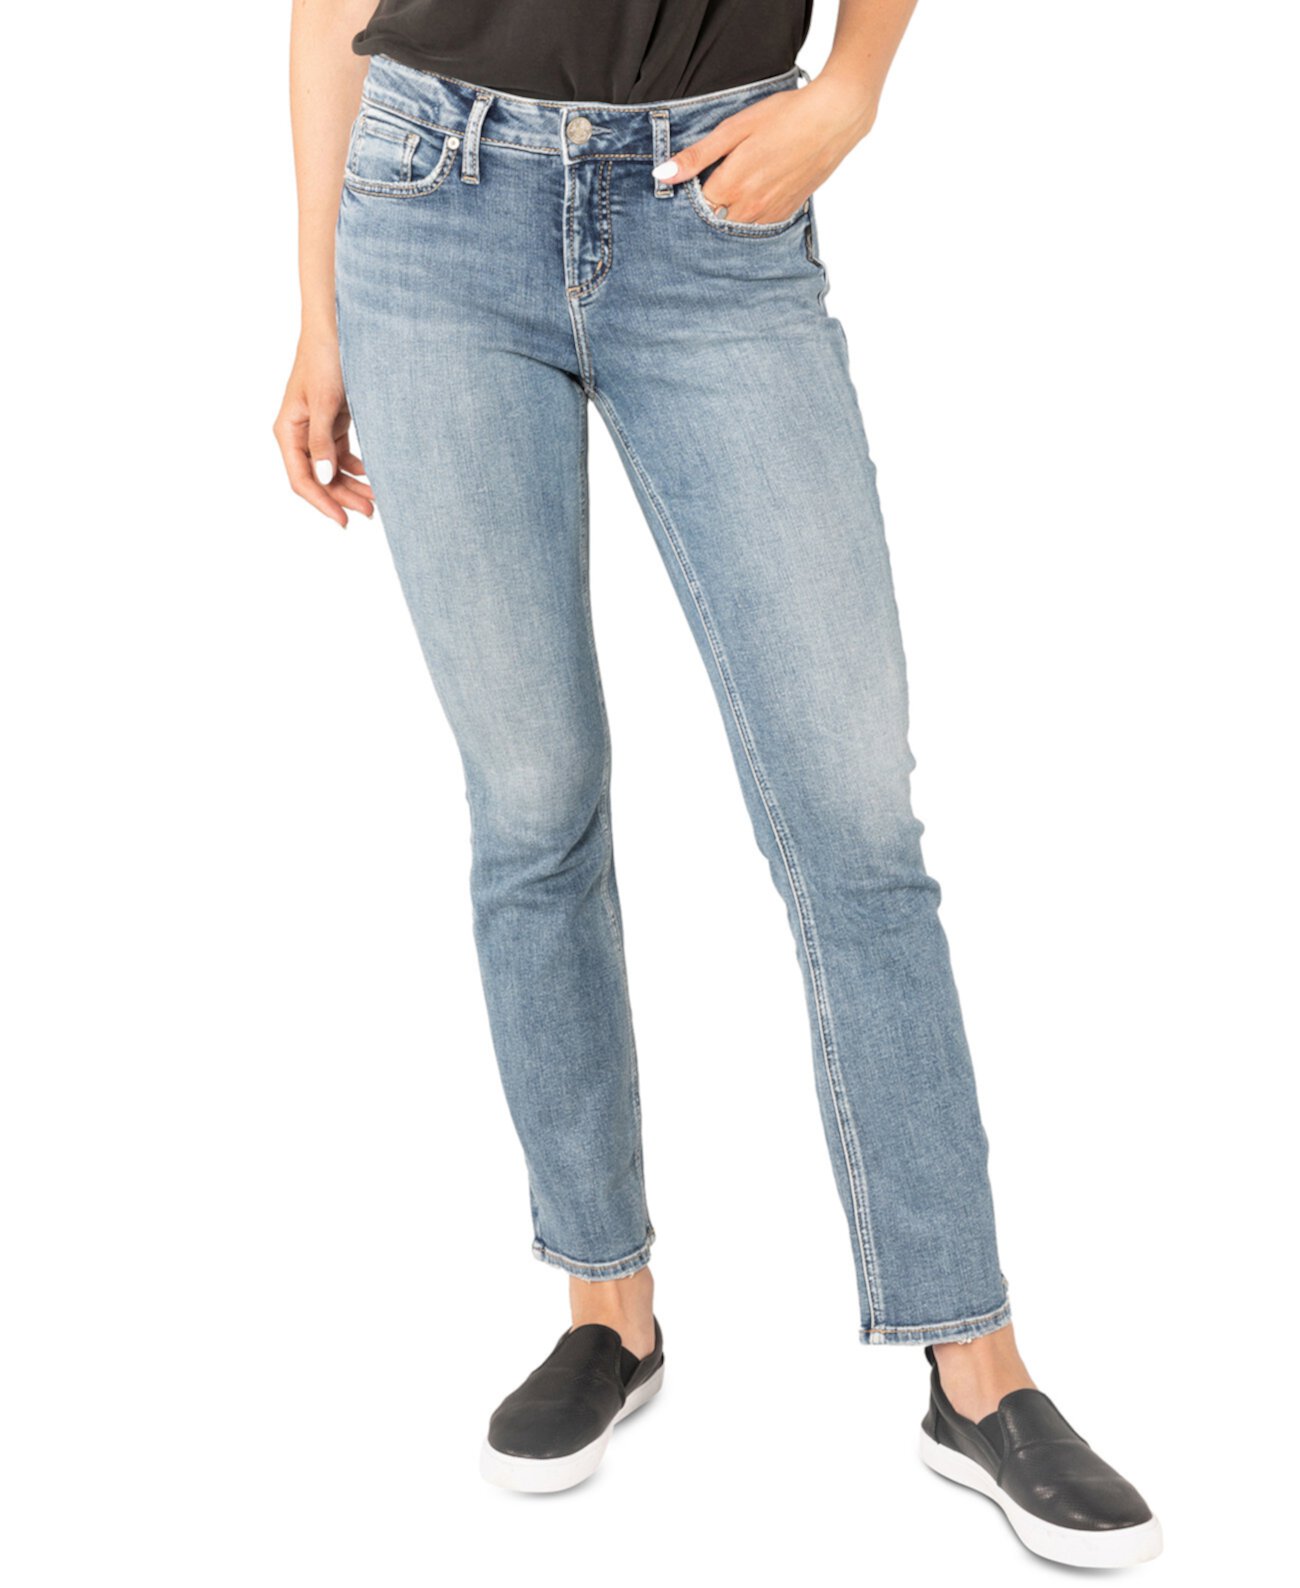 Прямые джинсы Suki средней посадки с пышными формами Silver Jeans Co.